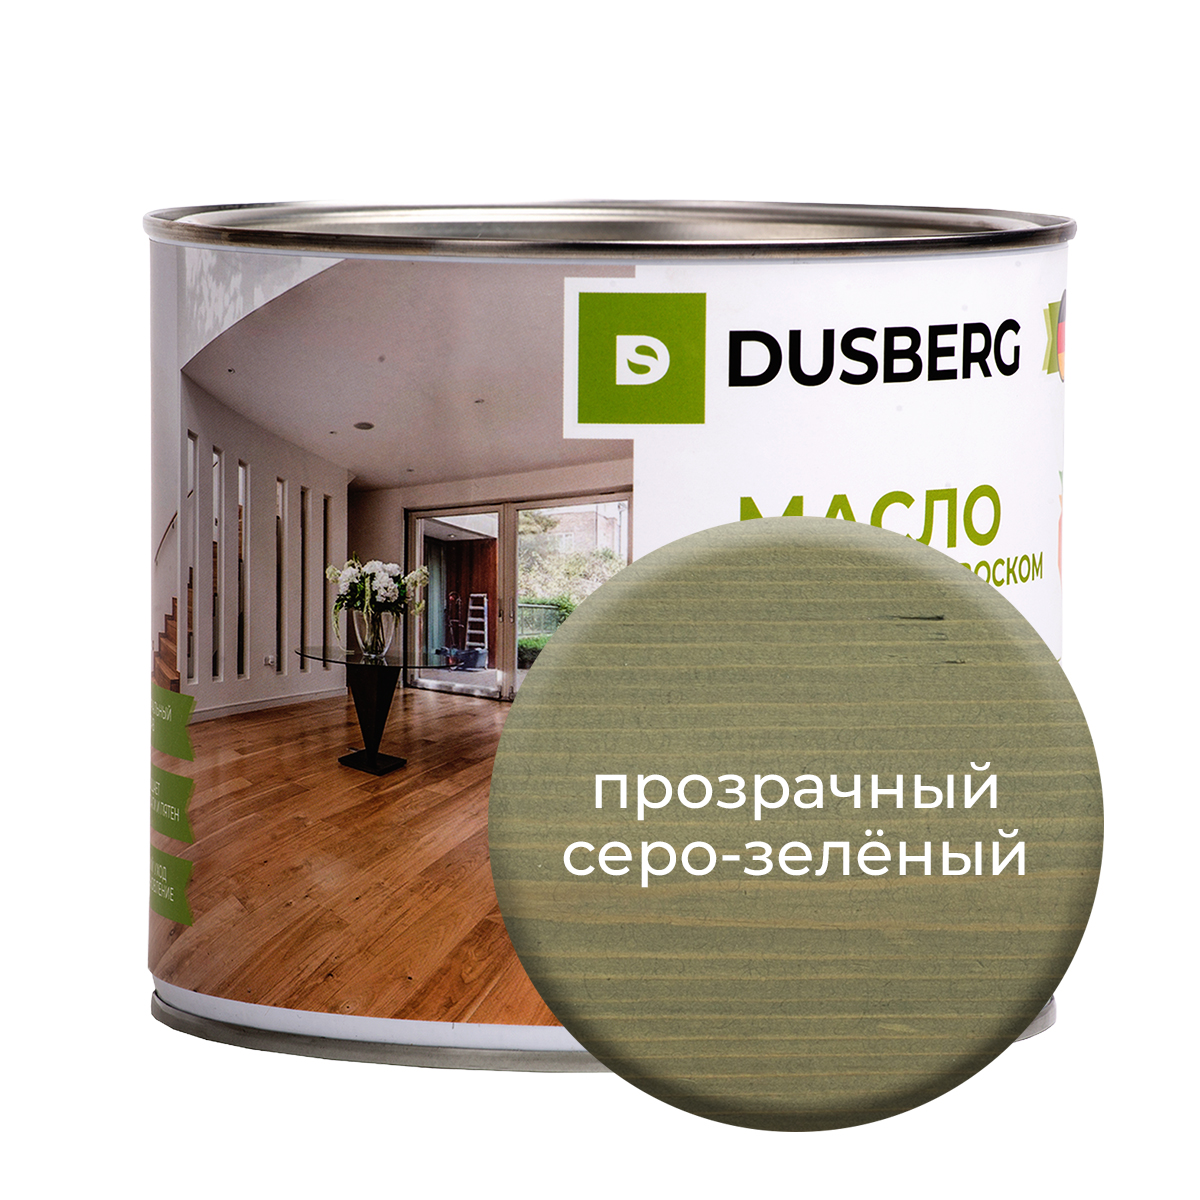 Масло Dusberg для стен на бесцветной основе, 750 мл Прозрачный серо-зеленый масло dusberg для дерева на бесцветной основе 750 мл голдохор